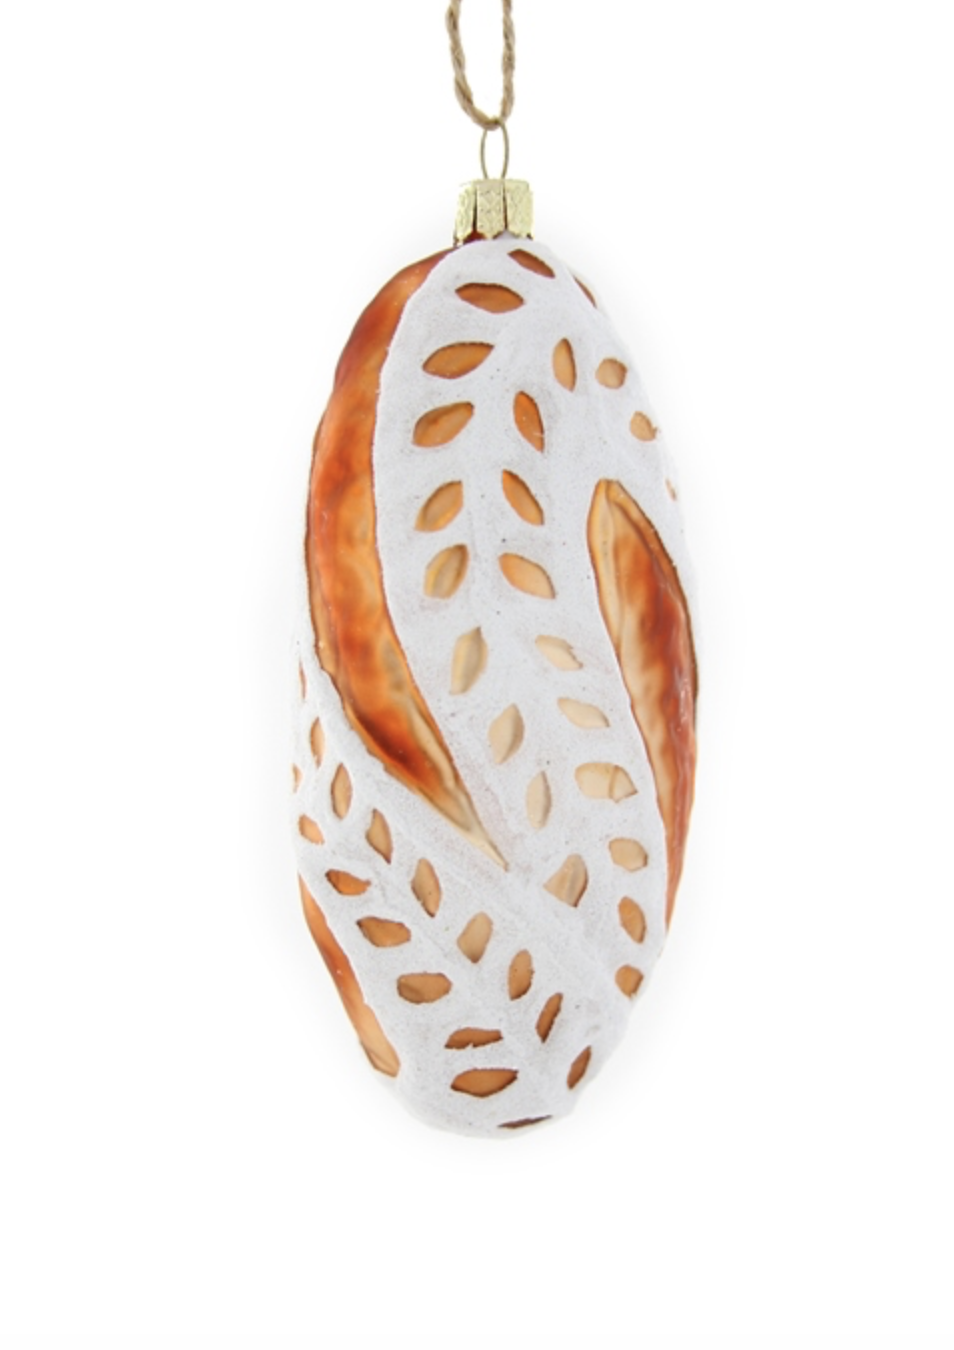 Bread Ornament